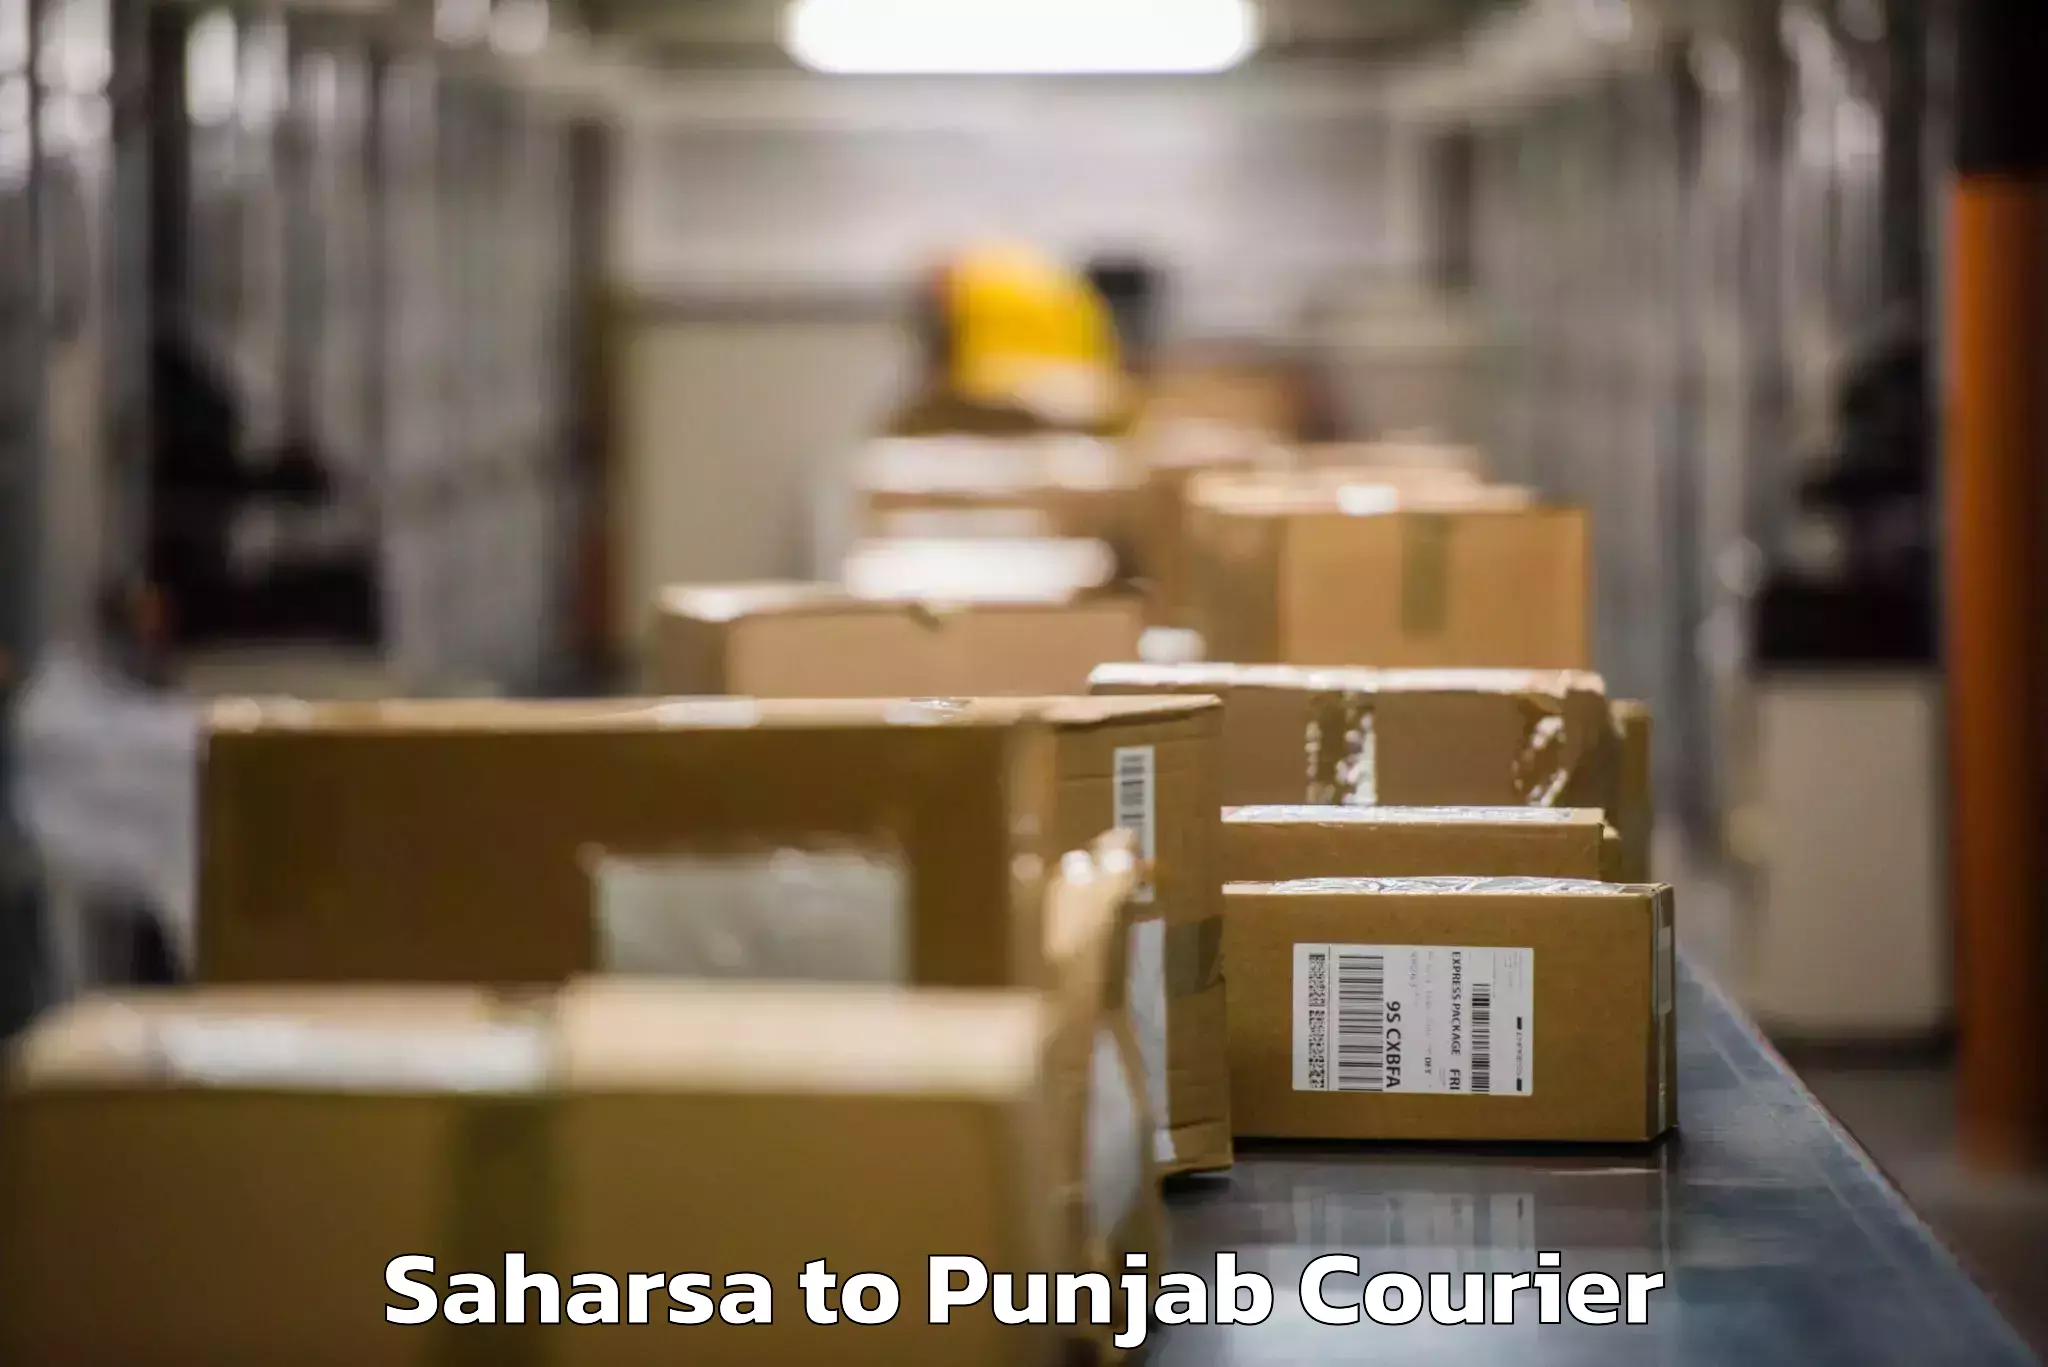 Baggage shipping quotes Saharsa to Punjab